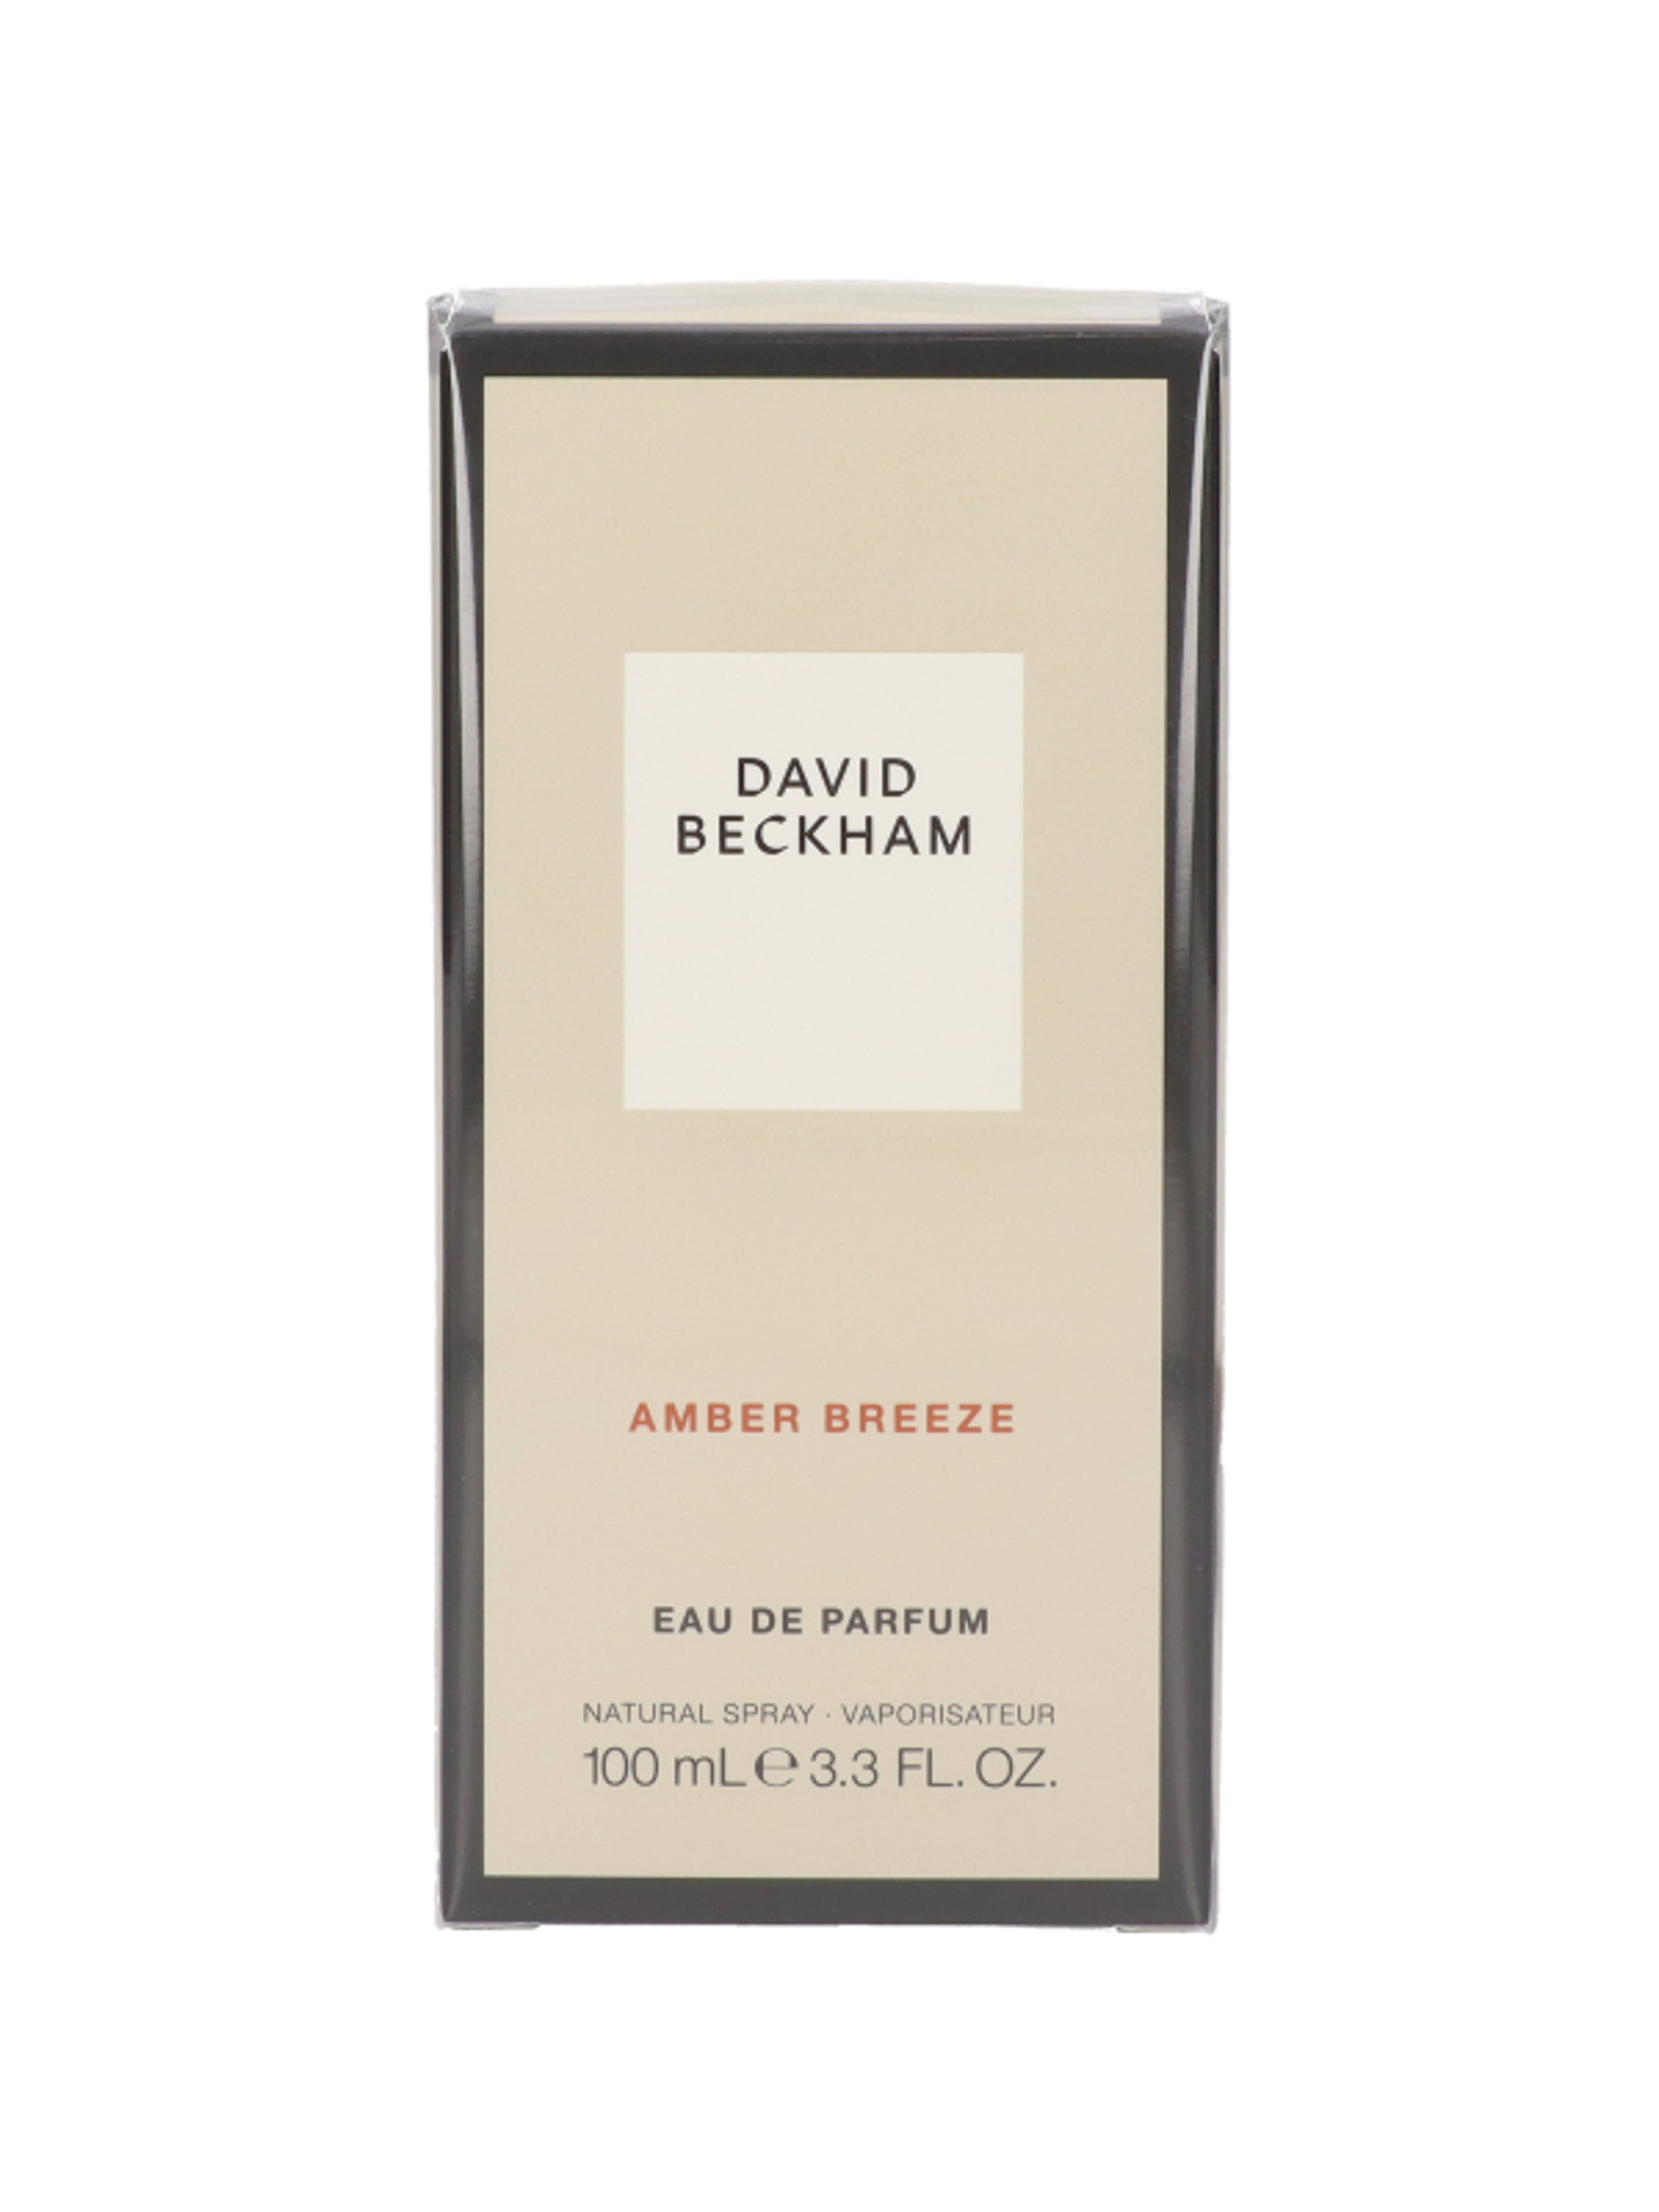 David Beckham Amber Breeze Eau de Parfum - 100 ml-2